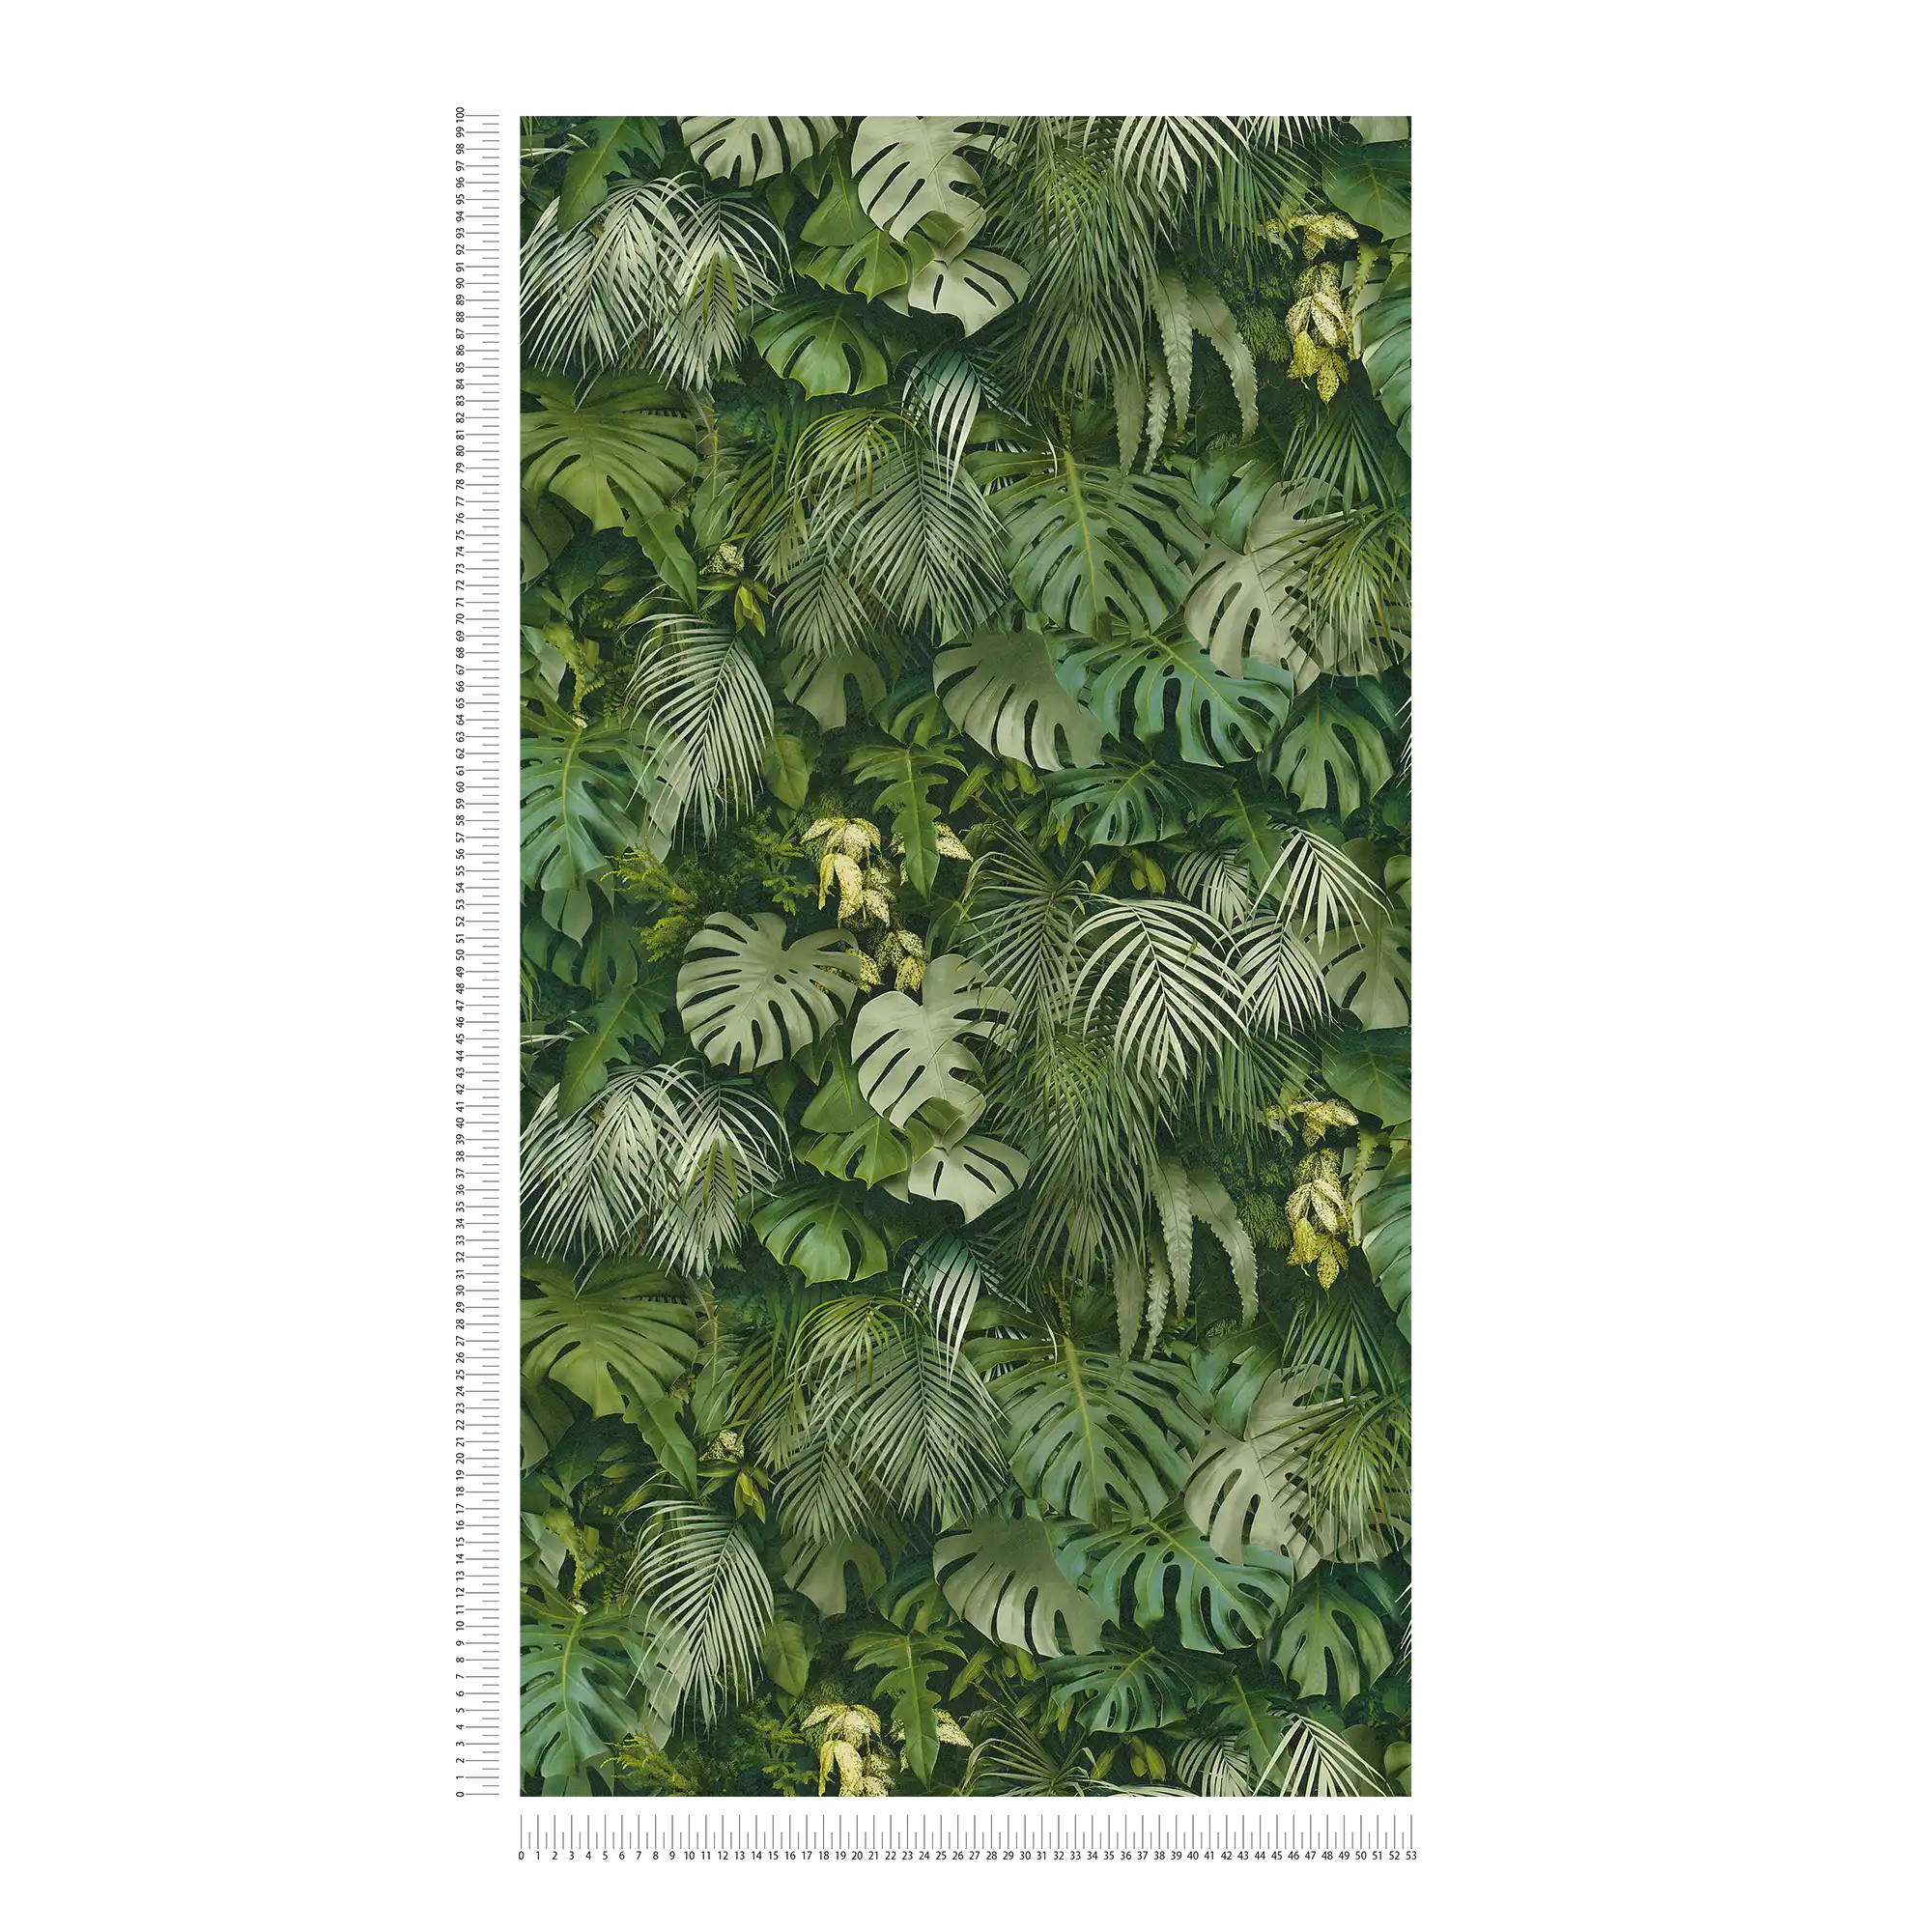             Tapete Grüner Blätterwald, realistisch, Farbakzente – Grün
        